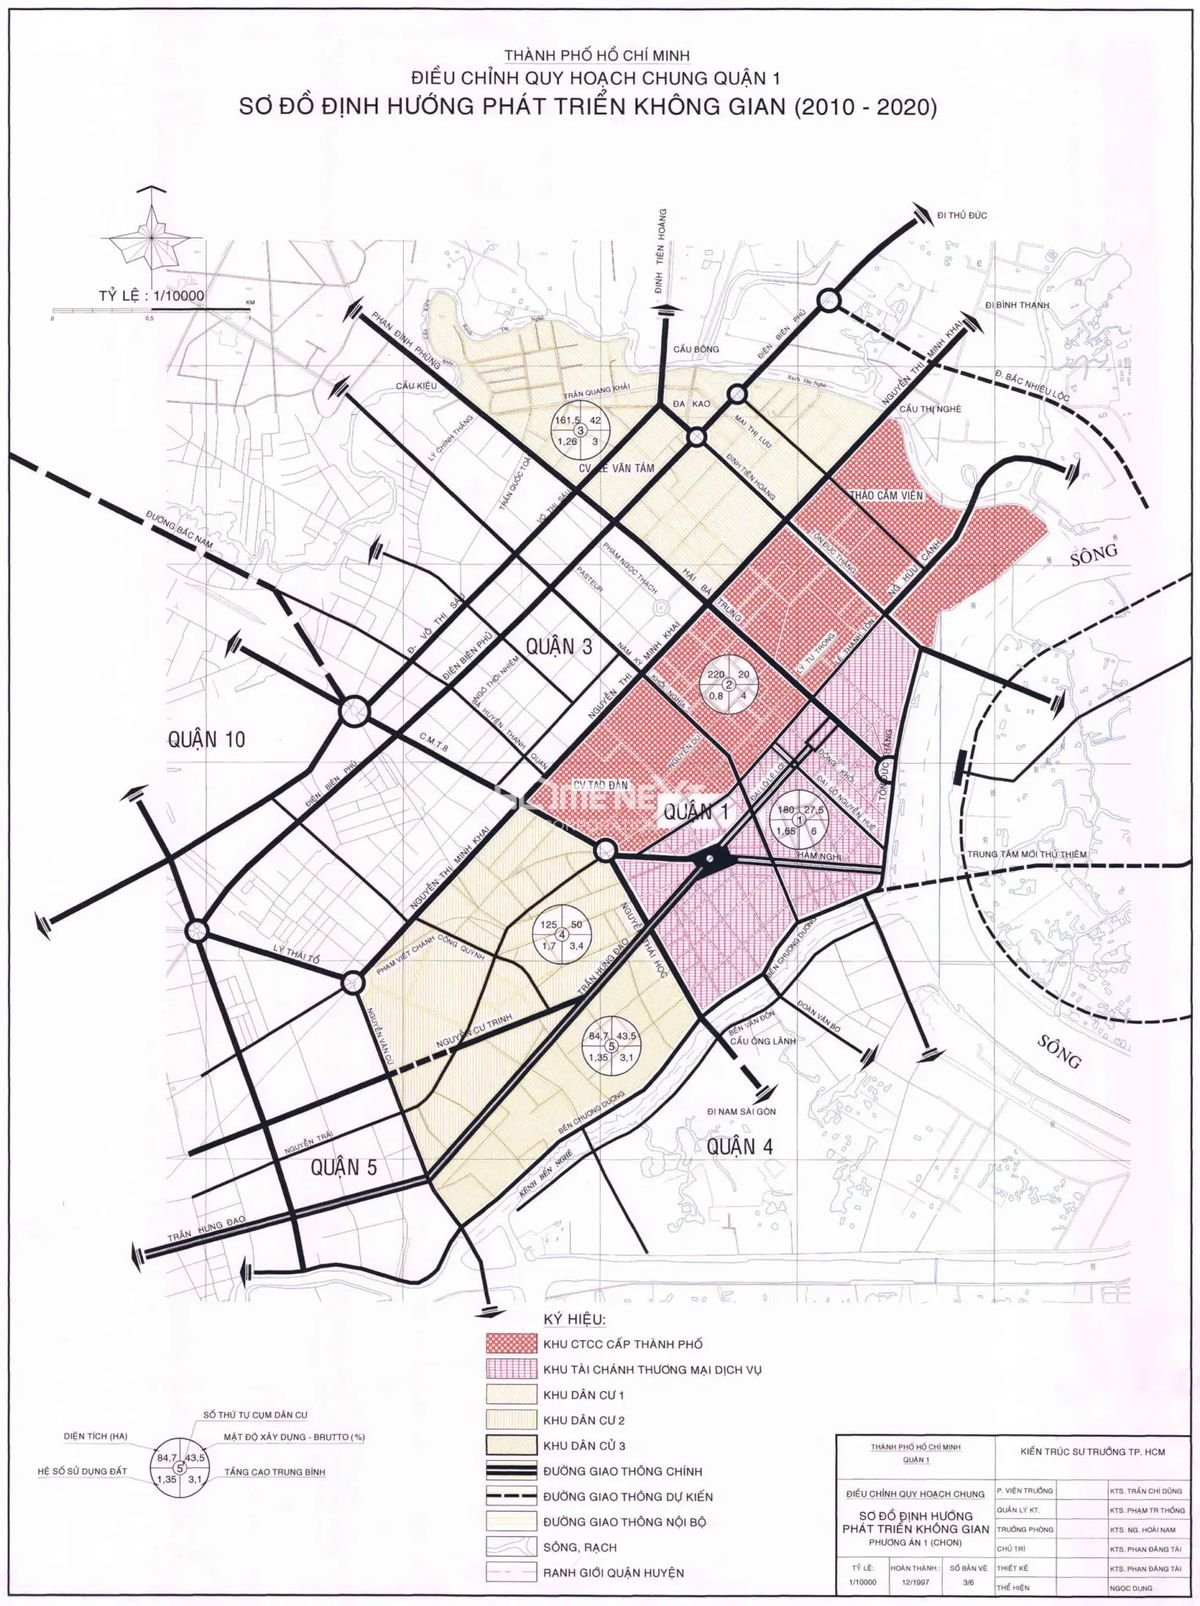 Bản đồ quy hoạch chung quận 1, thành phố Hồ Chí Minh